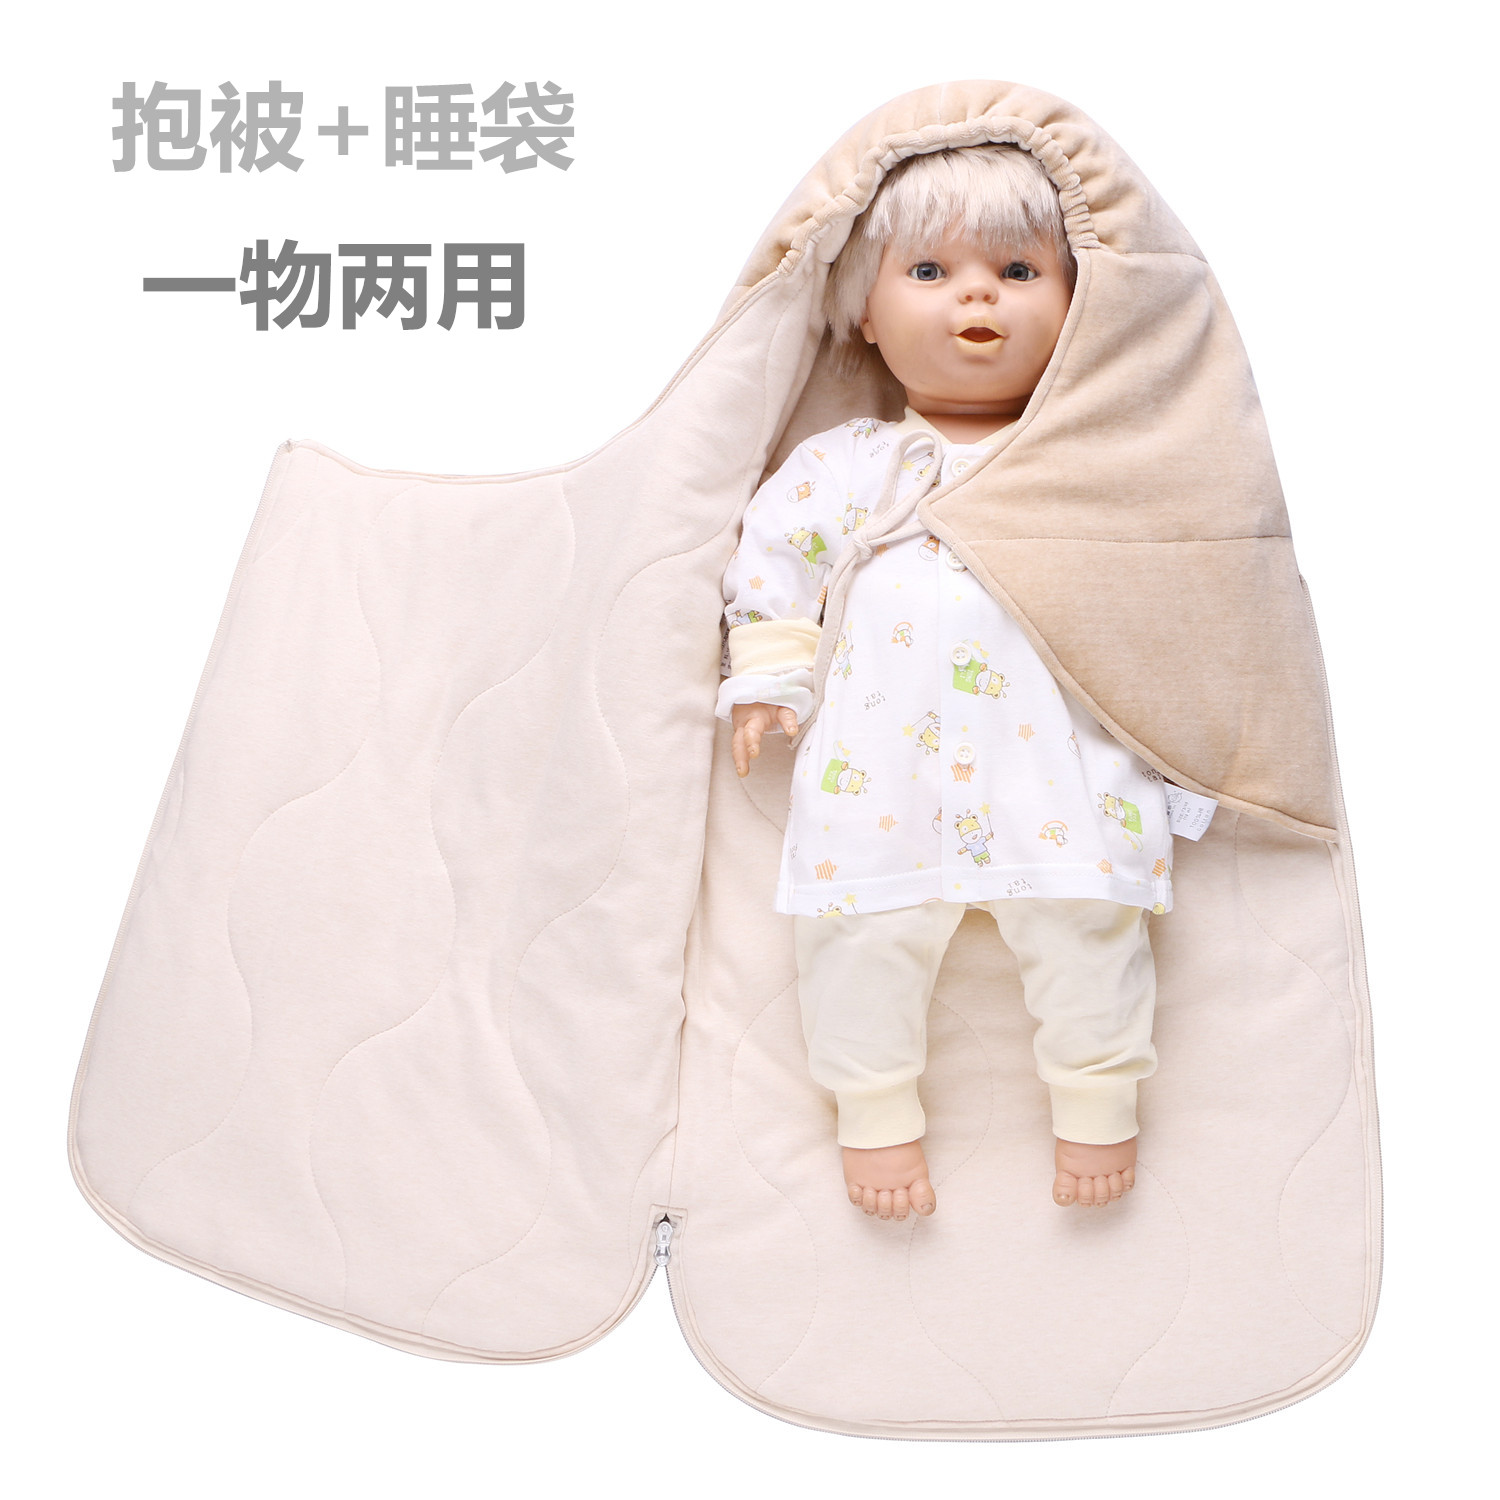 婴儿抱被睡袋两用宝宝有机棉防踢被新生儿纯棉包被抱毯春秋冬季厚